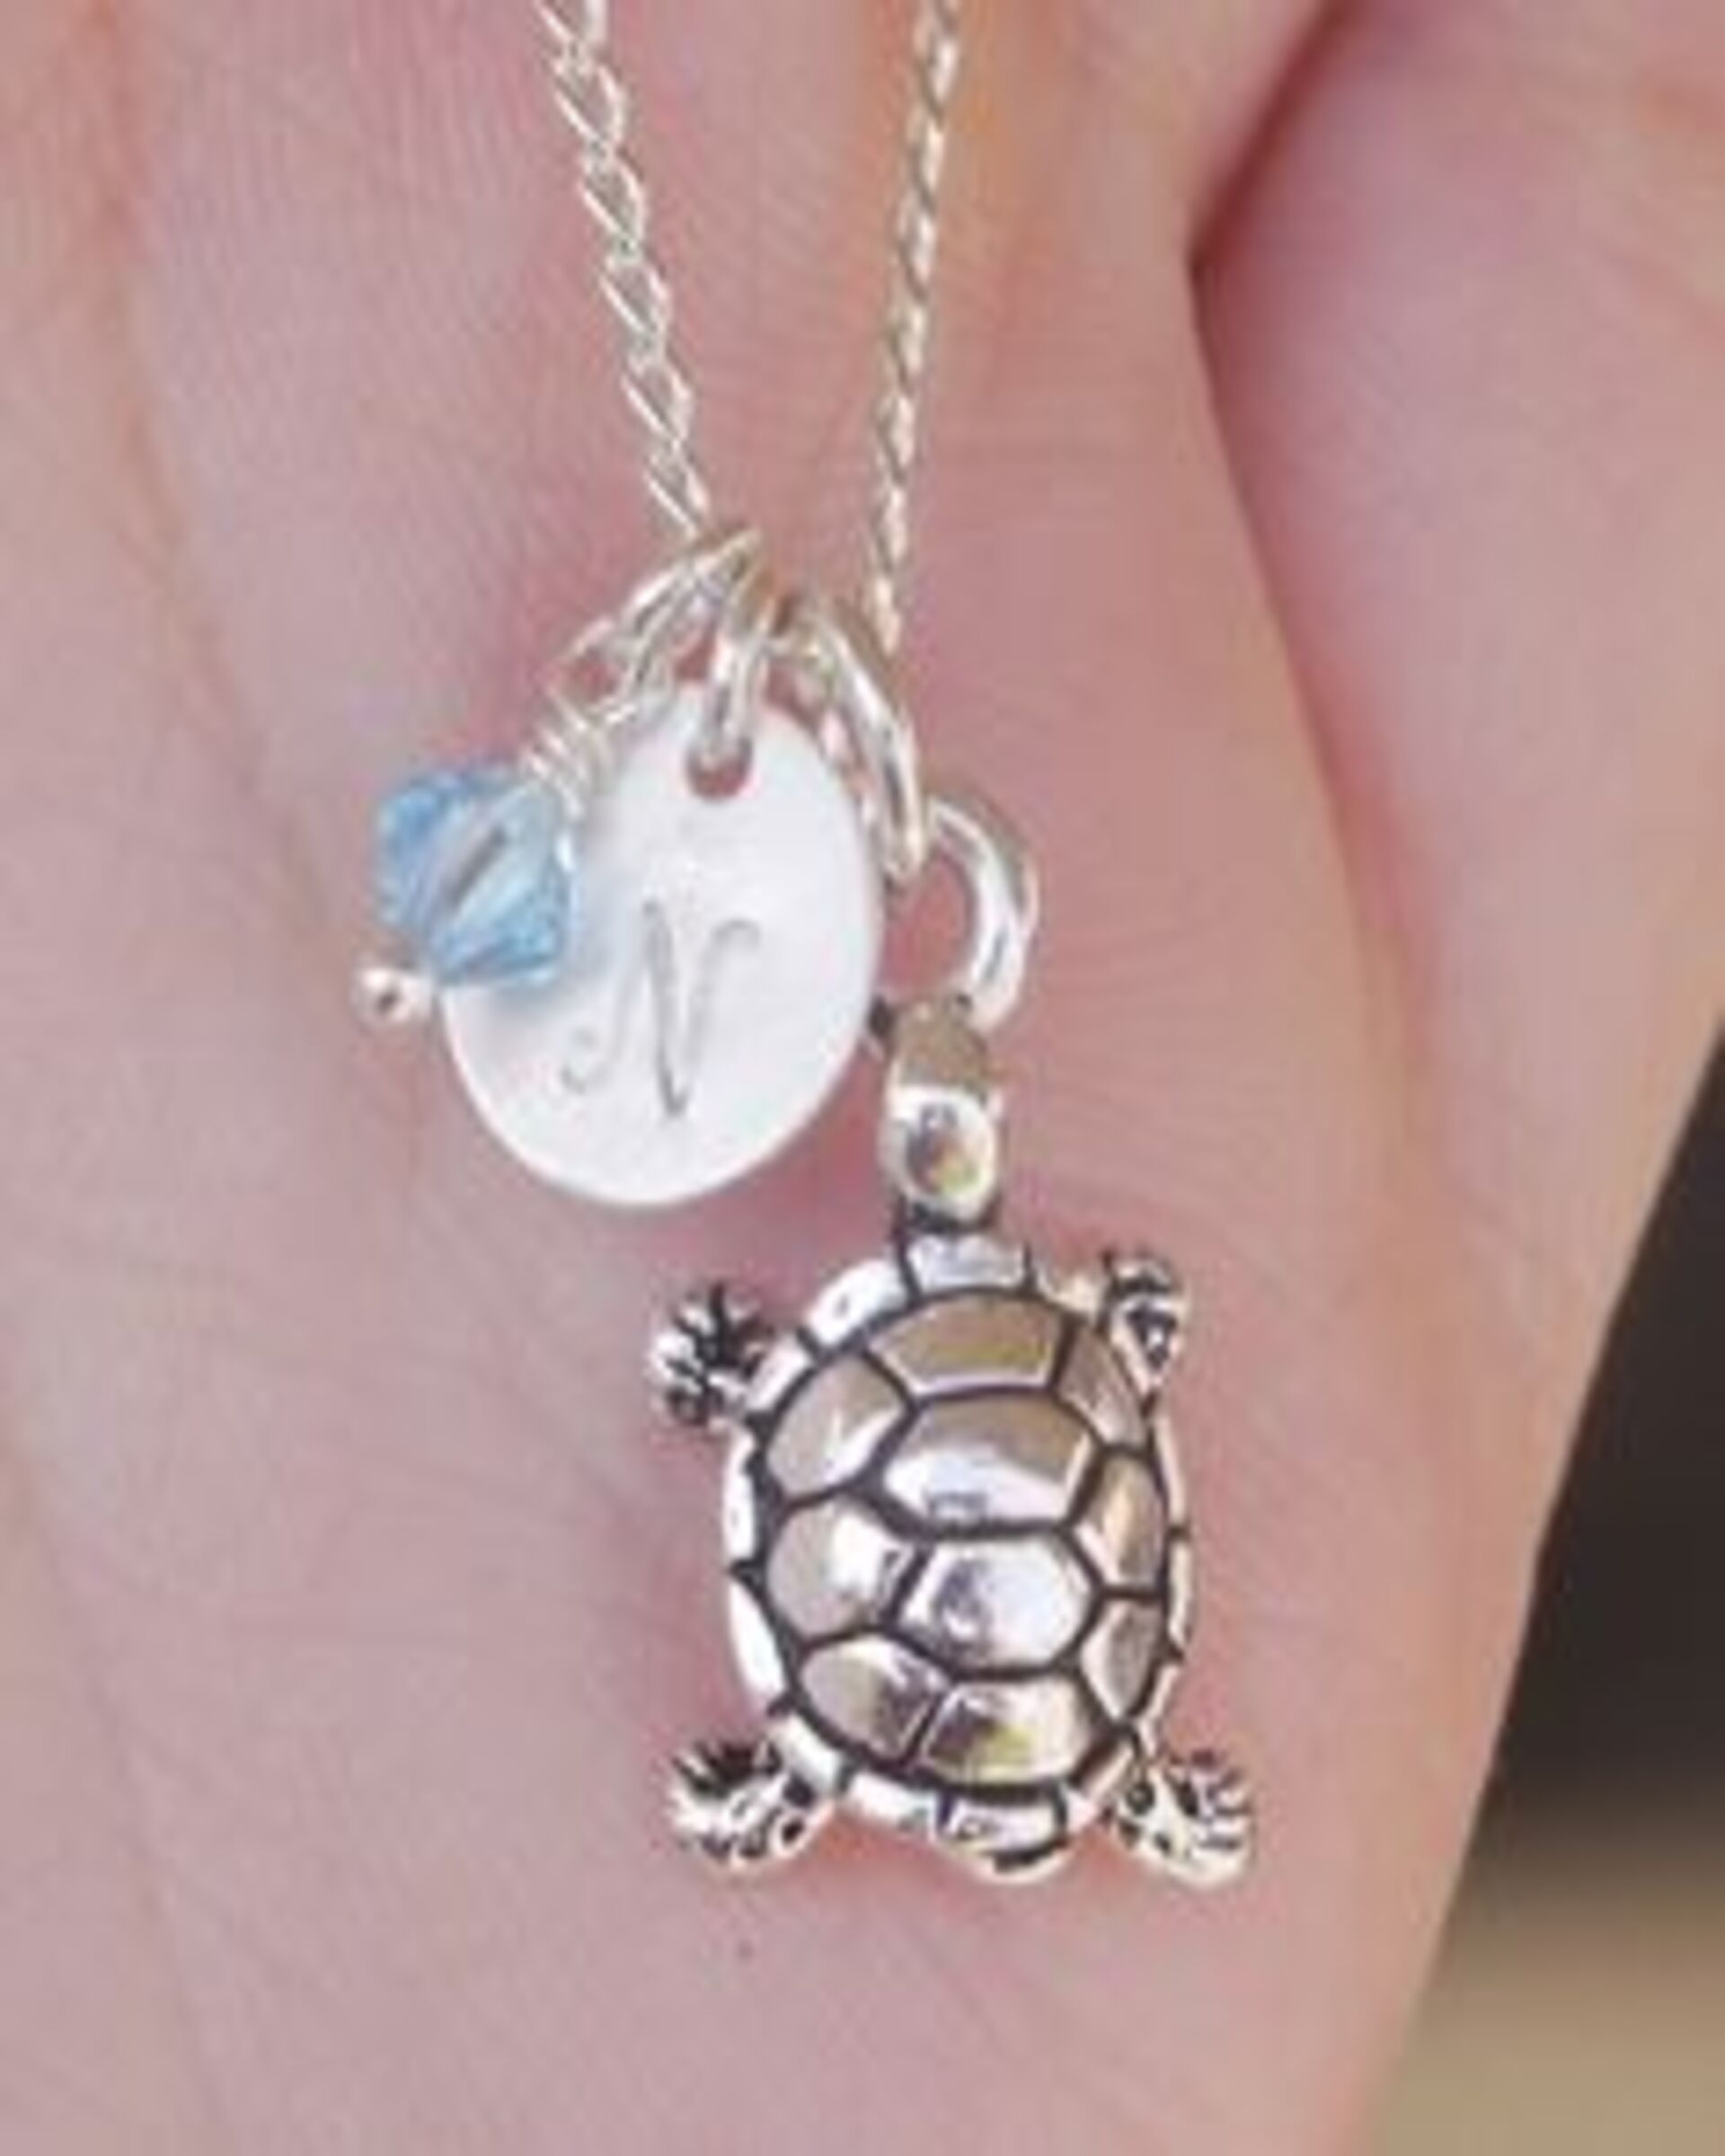 Eine Schildkröten-Halskette mit den Initialen "N" | Quelle: Flickr